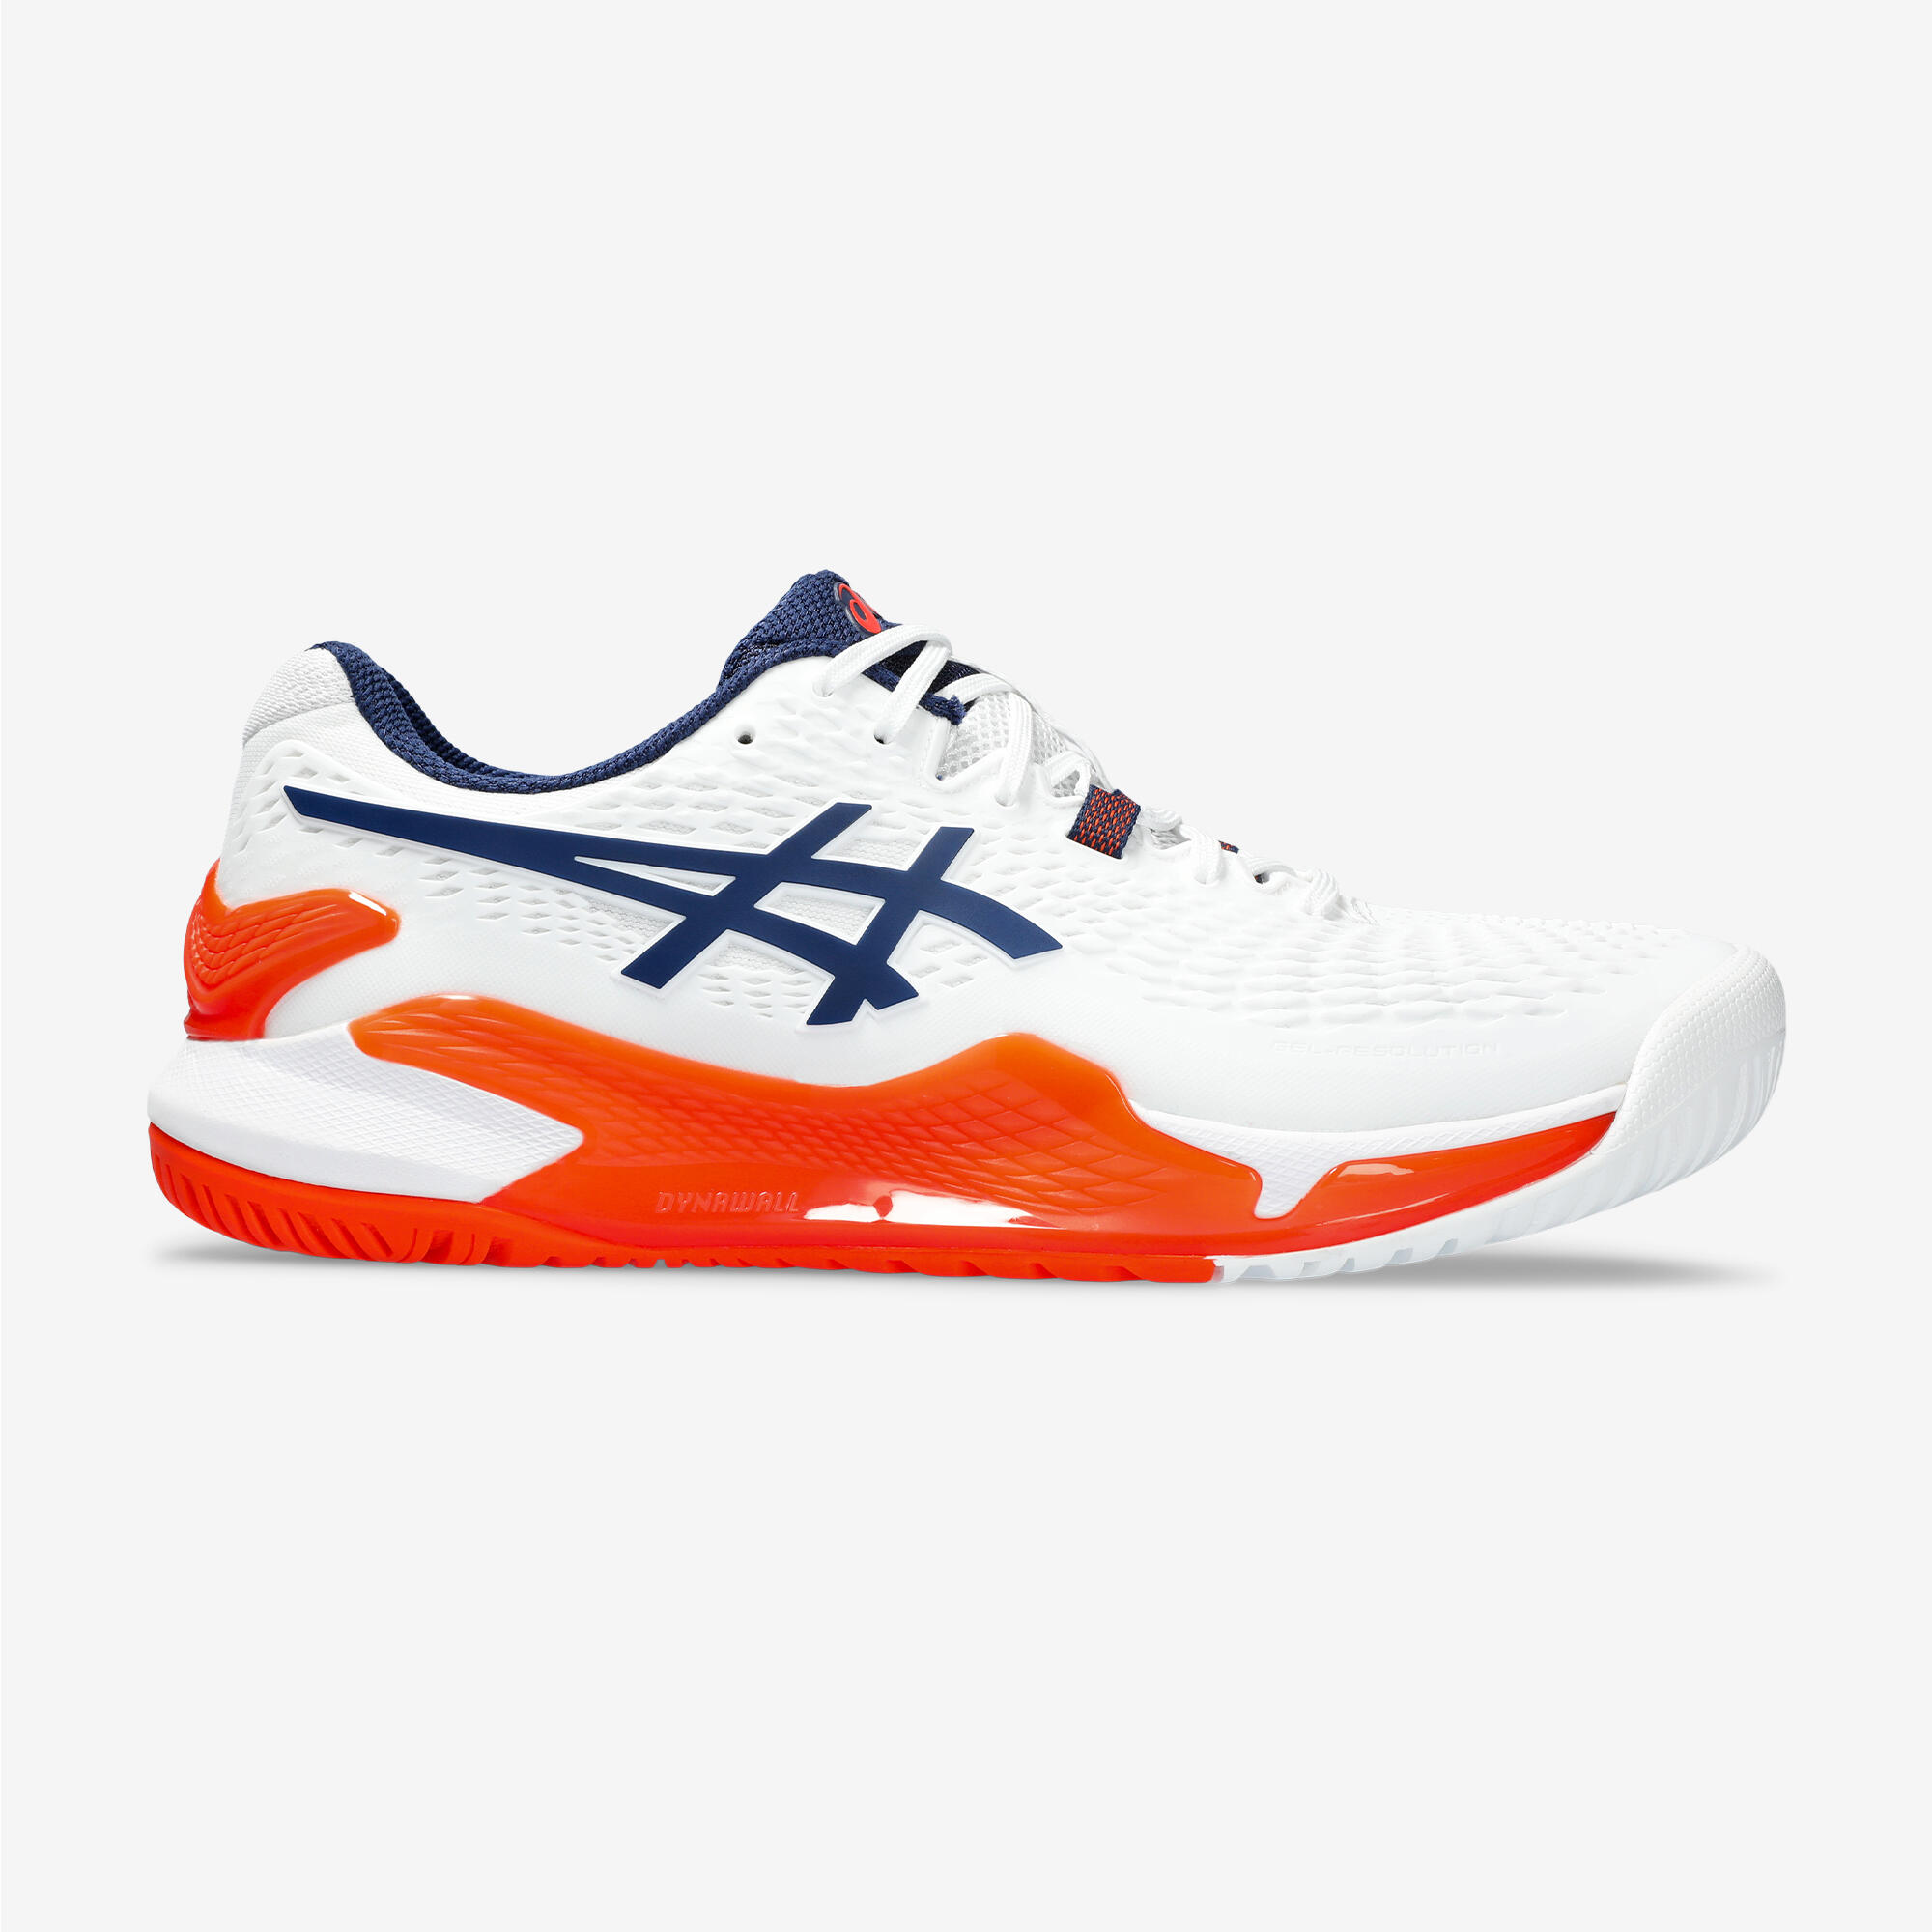 Men's Multicourt Tennis Shoes Gel Resolution 9 - White/Orange 1/7